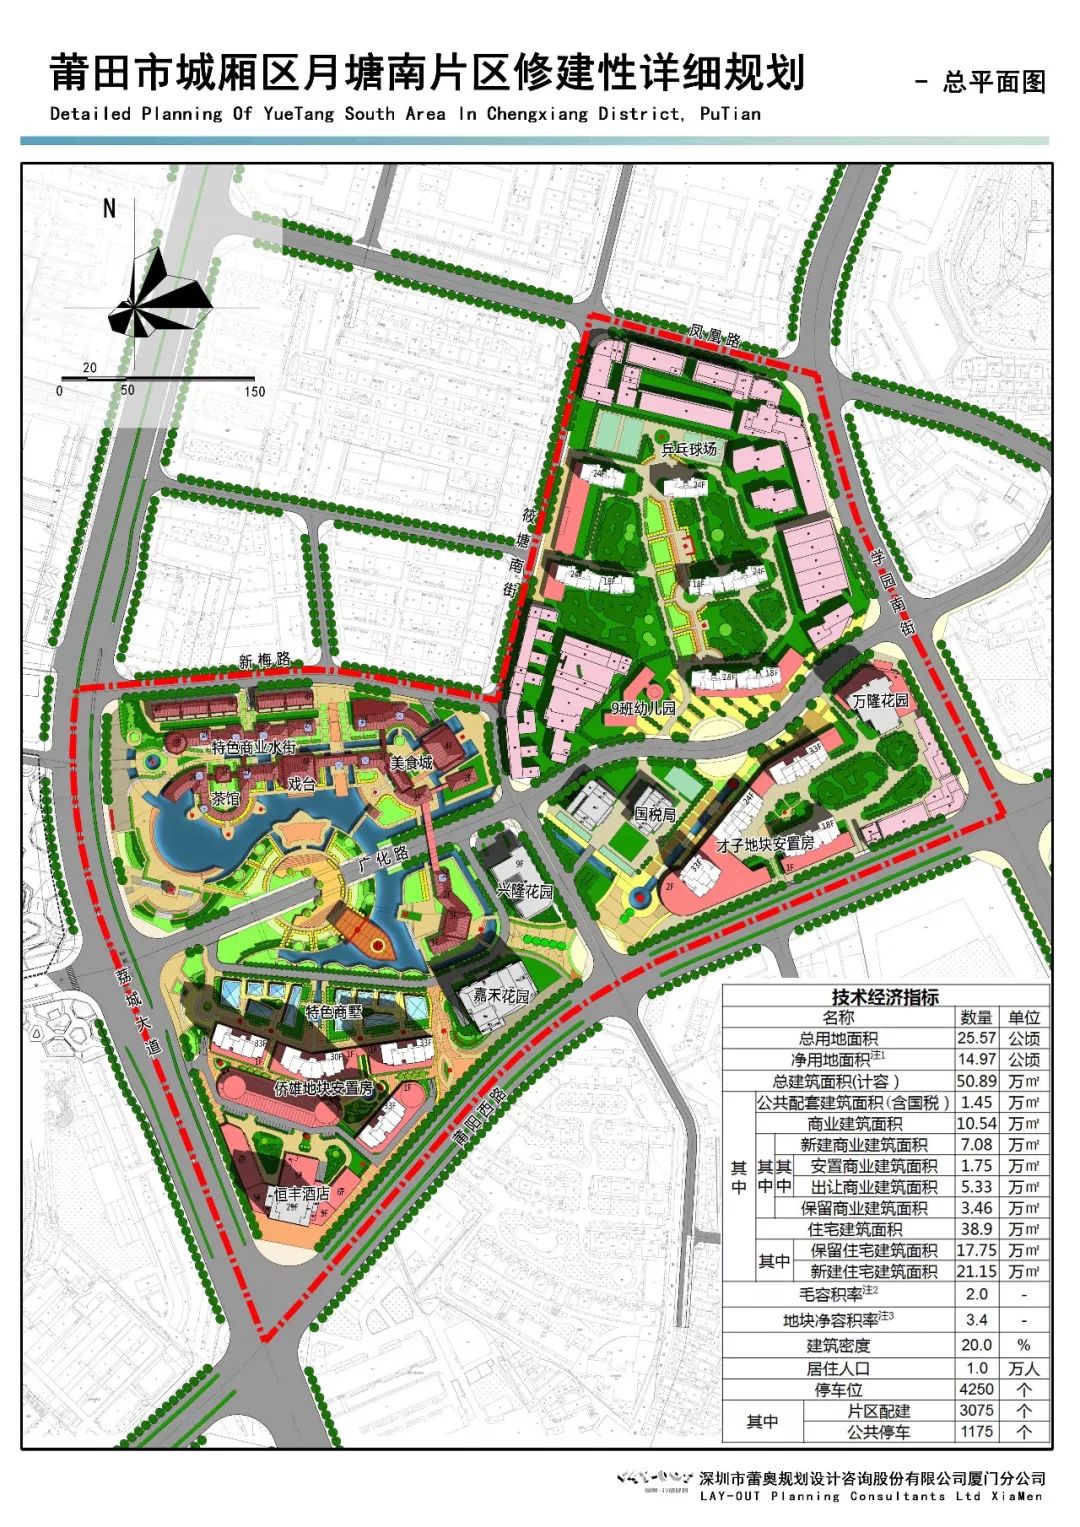 近期莆田市城厢区月塘南片区修建性详细规划总平面图出炉,规划有特色